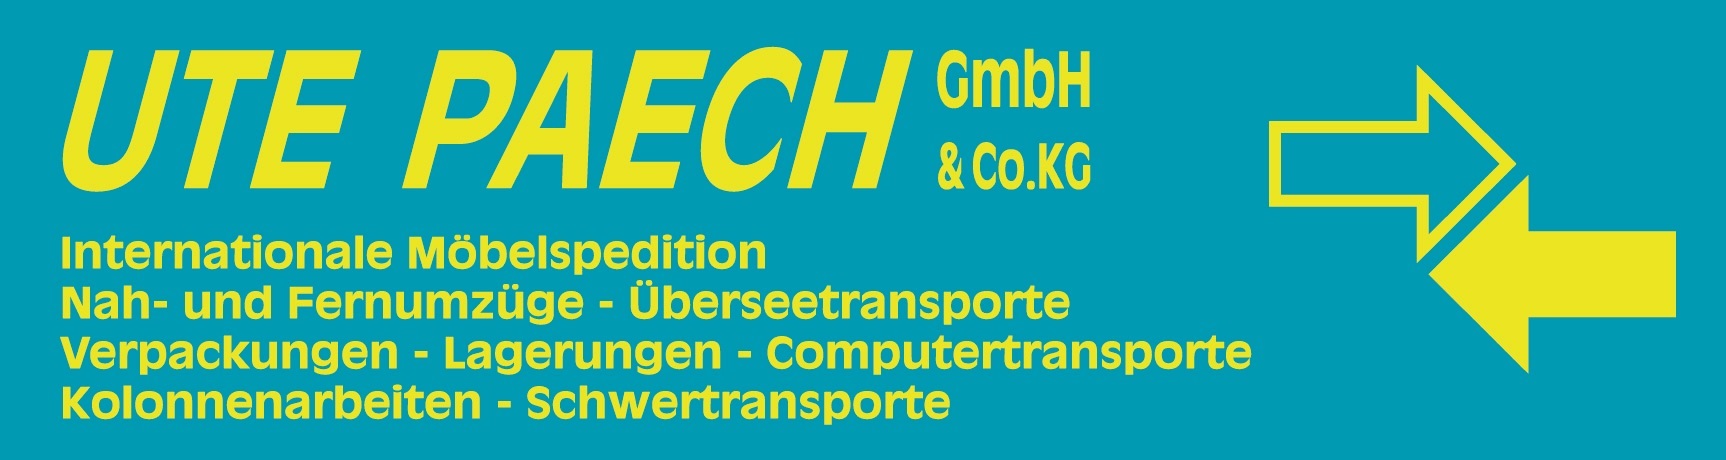 ute-paech-gmbh-und-co-kg-logo